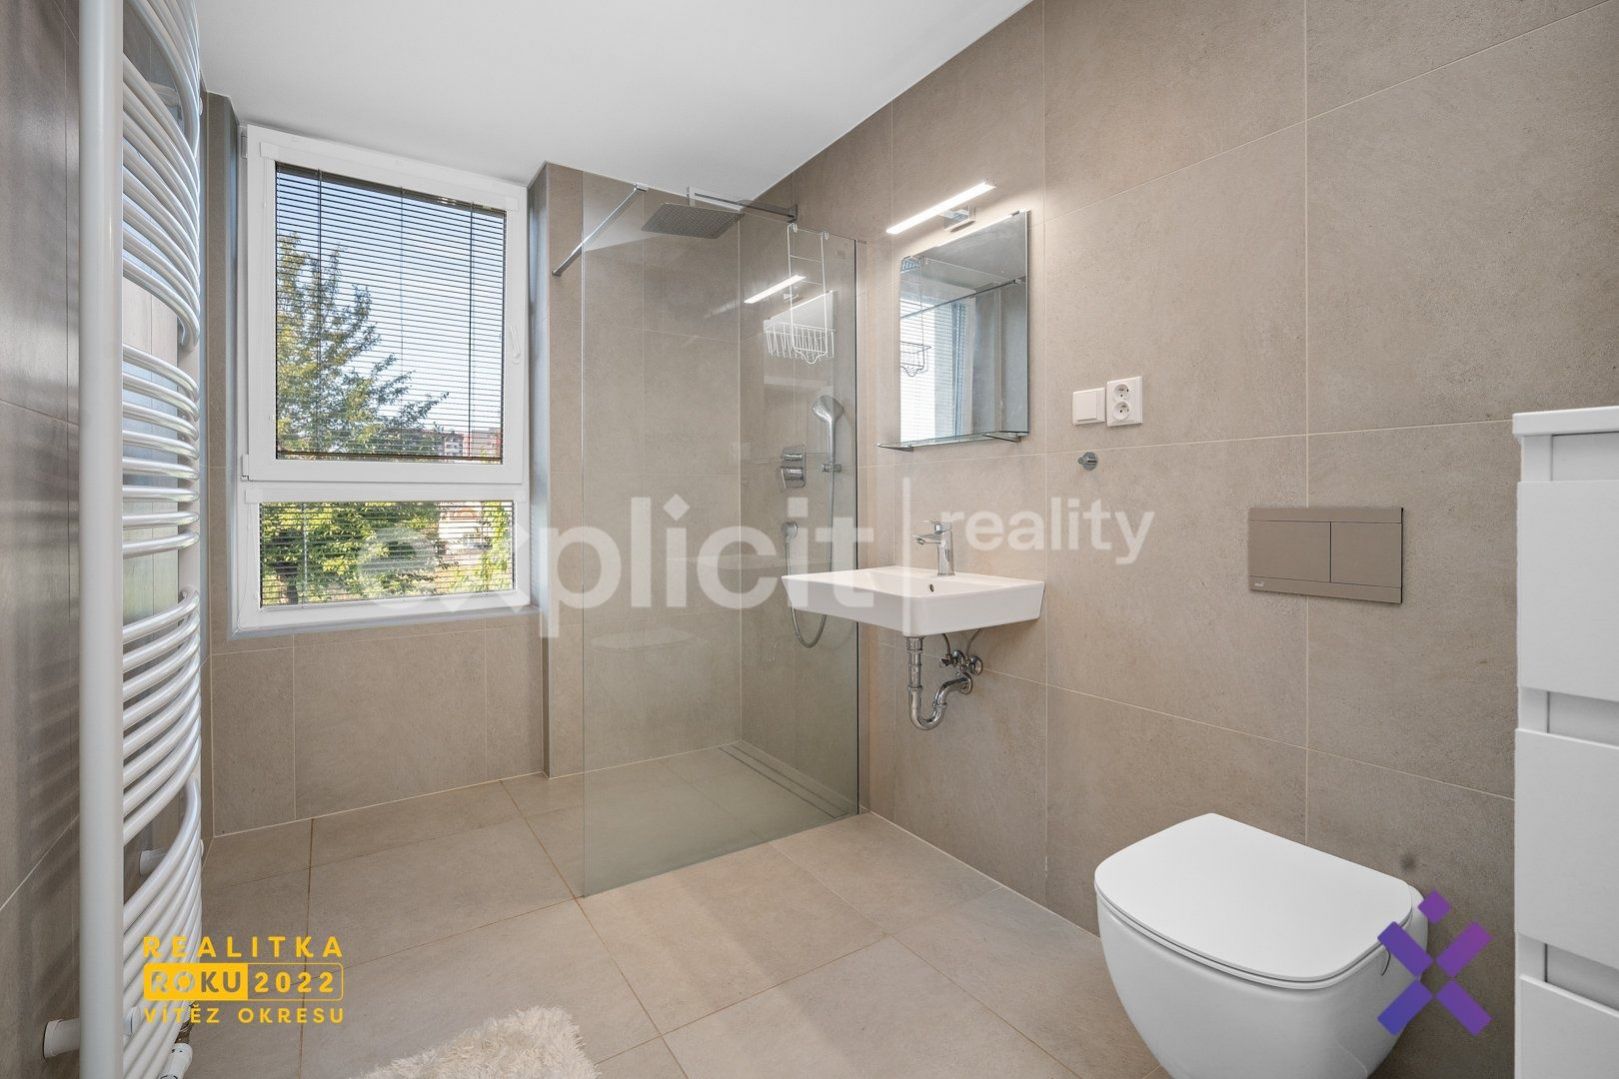 Prodej moderního bytu 2+kk (60 m2) v novostavbě z roku 2021, Otrokovice, obrázek č. 2